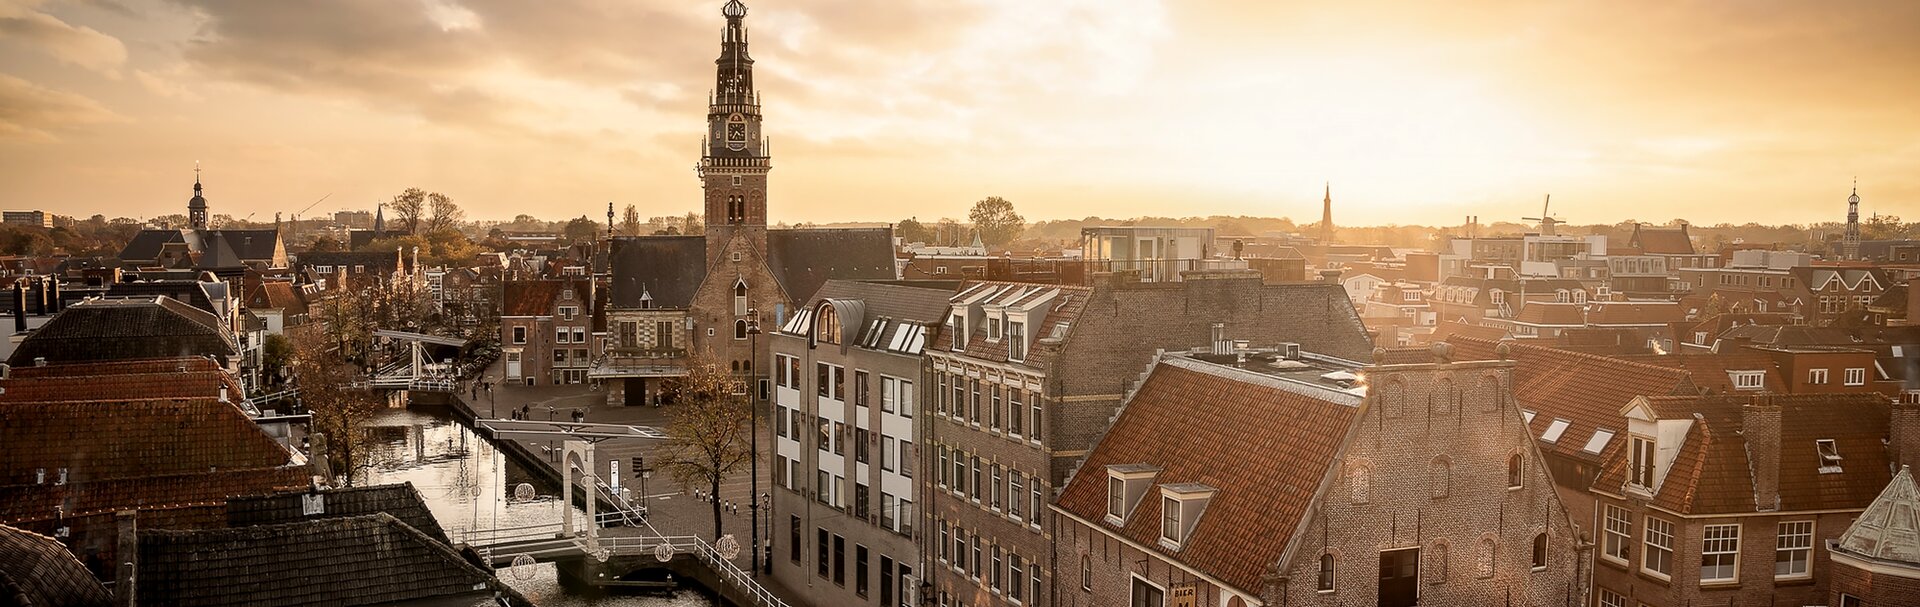 Scopri la splendida città di Alkmaar!